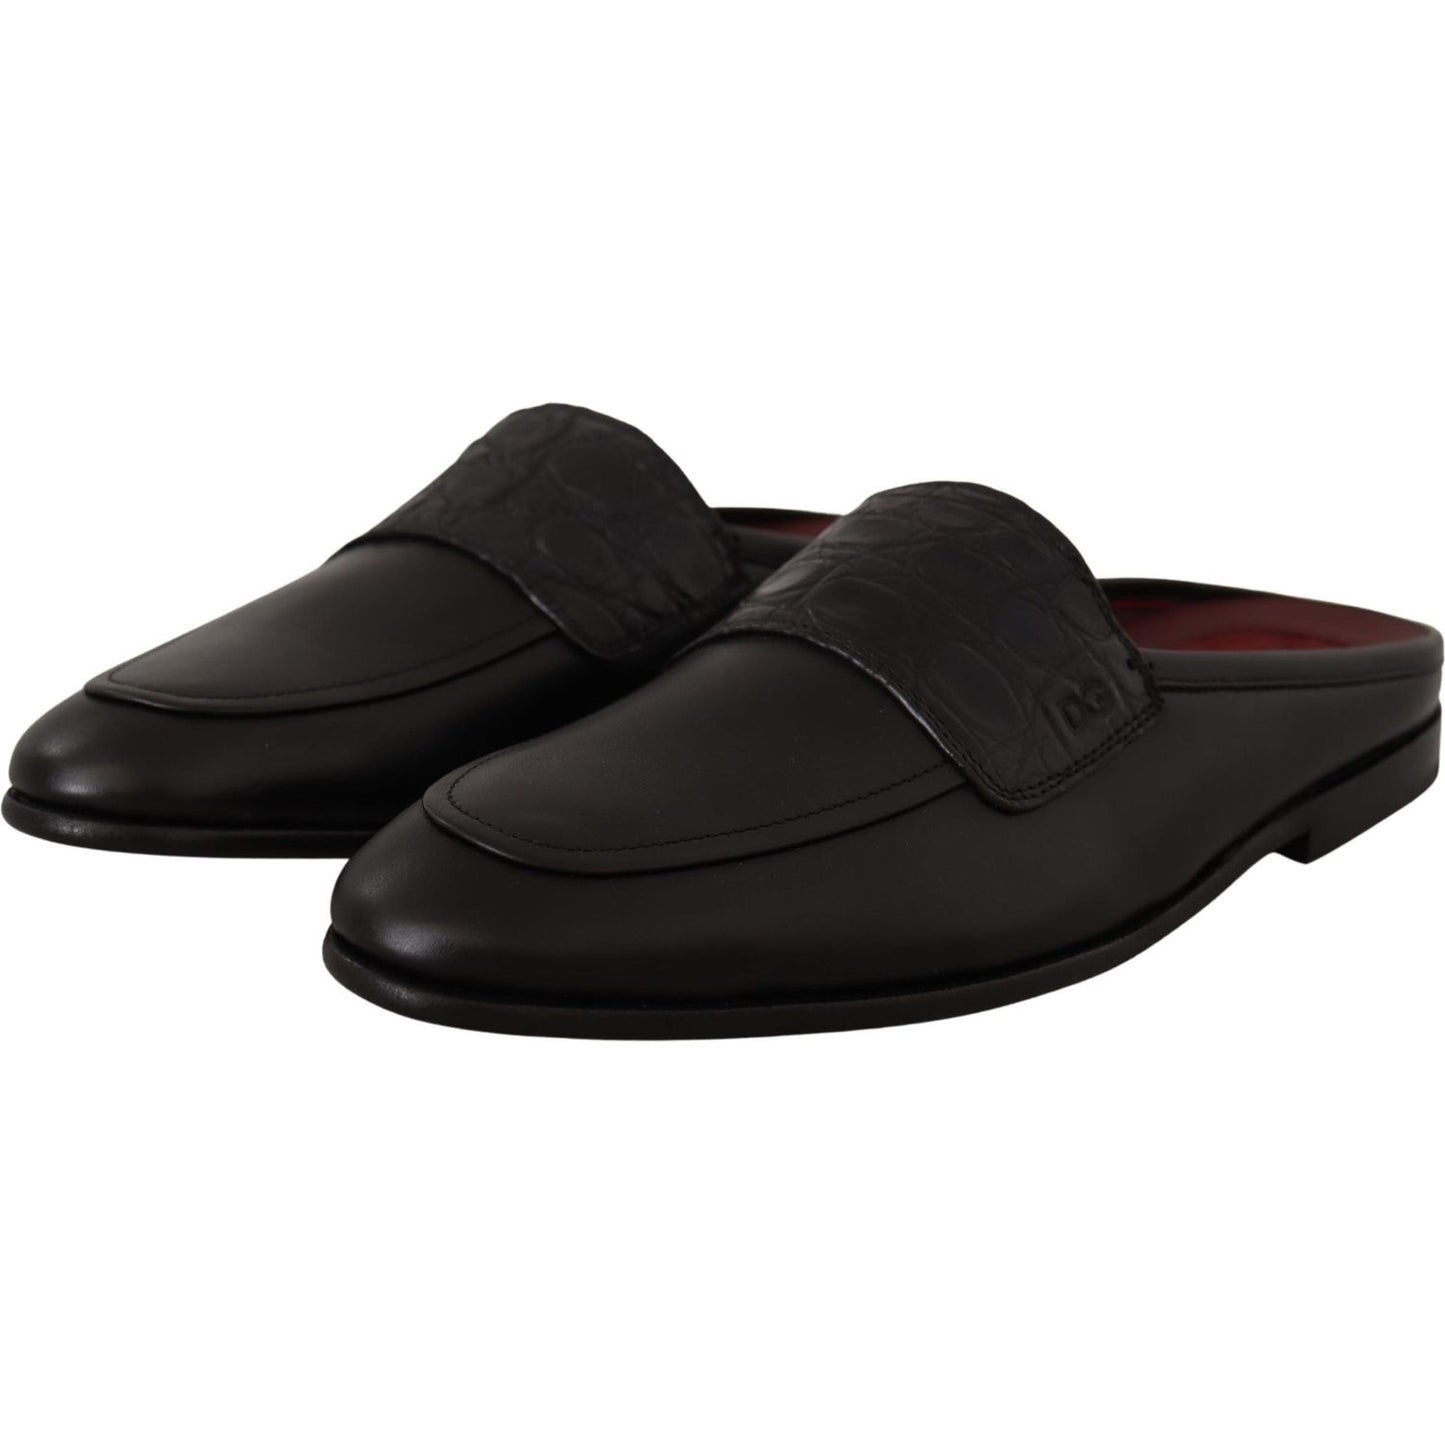 Dolce & Gabbana Exquisite Black & Burgundy Leather Slides black-leather-caiman-sandals-slides-slip-shoes IMG_1669-scaled-5c47256a-d86.jpg